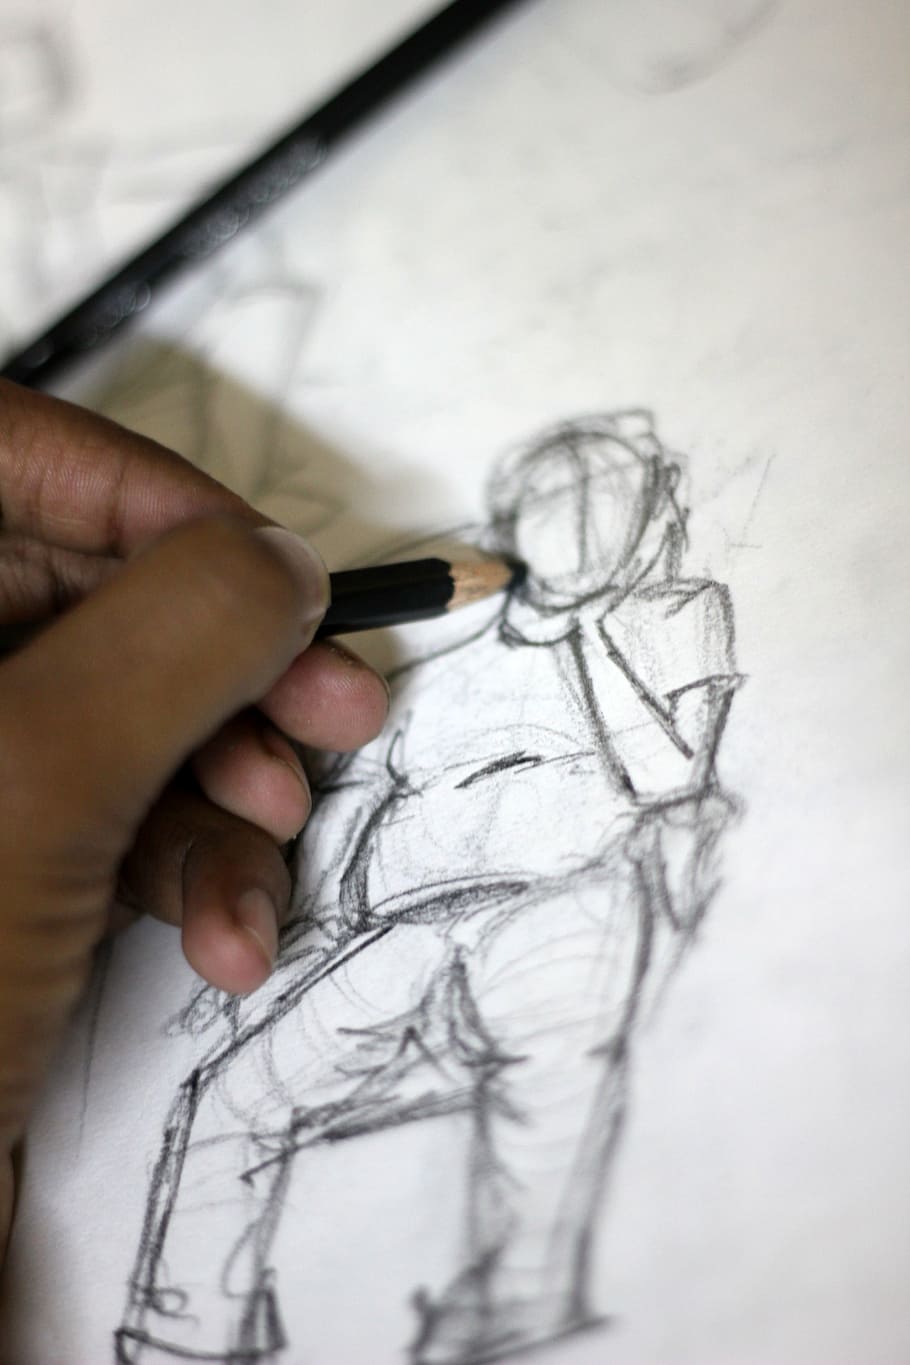 artista, desenhando, retrato, lápis, desenho, esboço, arte, desenhar, quadro, mão humana